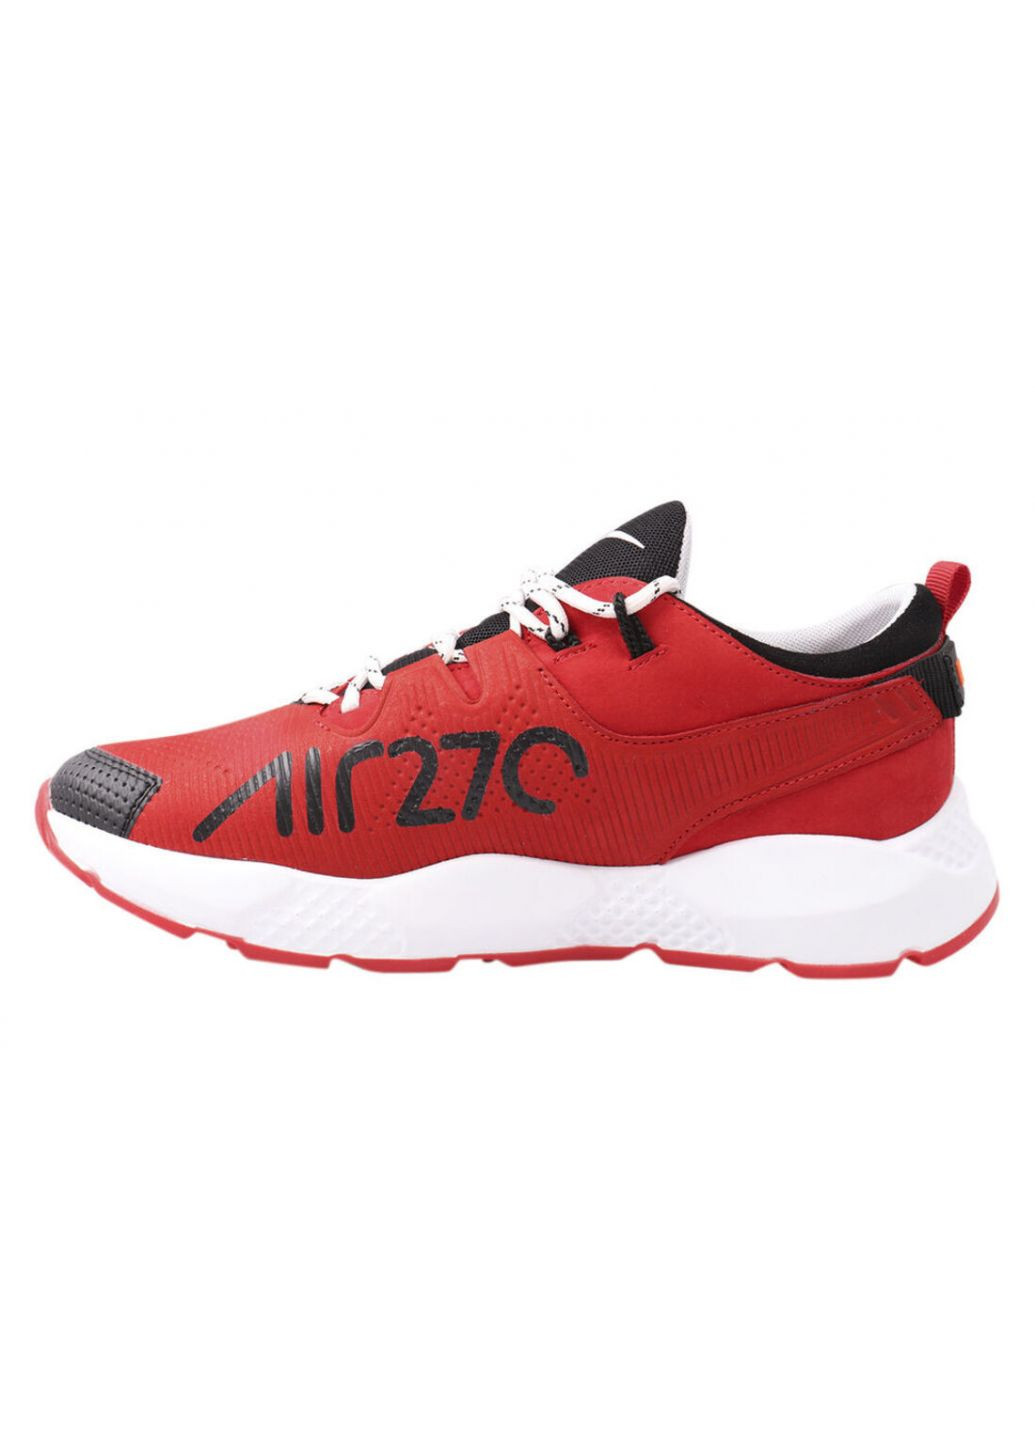 Червоні кросівки чоловічі з натуральної шкіри, на низькому ходу, на шнурівці, колір червоний, україна MDK 23-21DTS